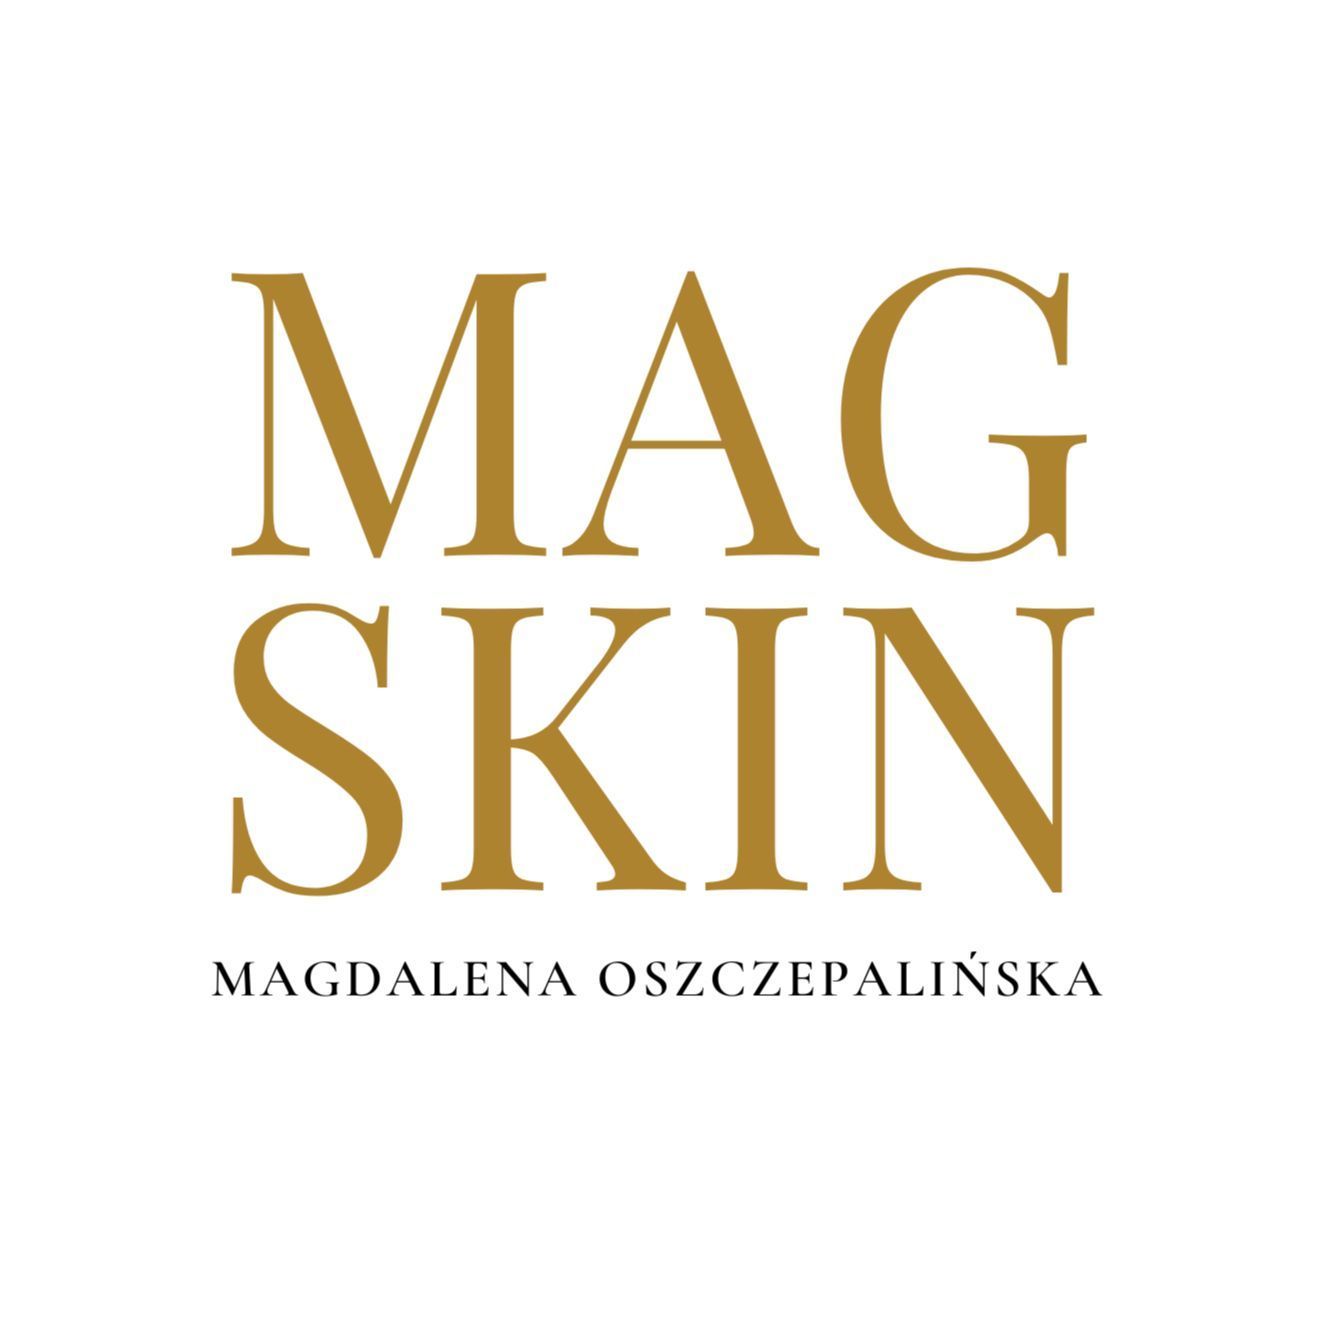 MagSkin Magdalena Oszczepalińska, Czarnej Hańczy 29, 15-161, Białystok